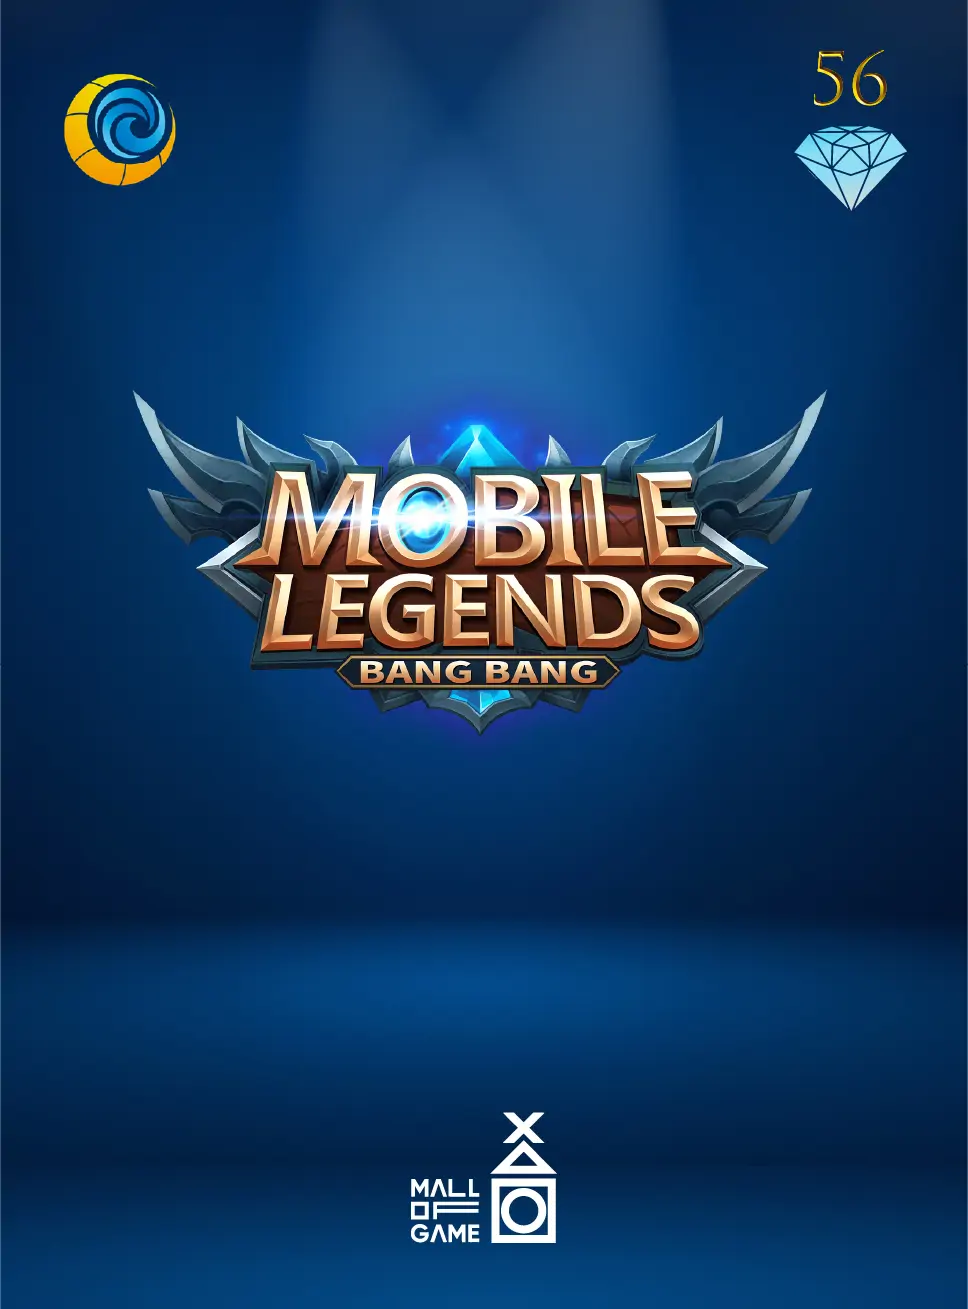 Mobile Legends 56 Diamond